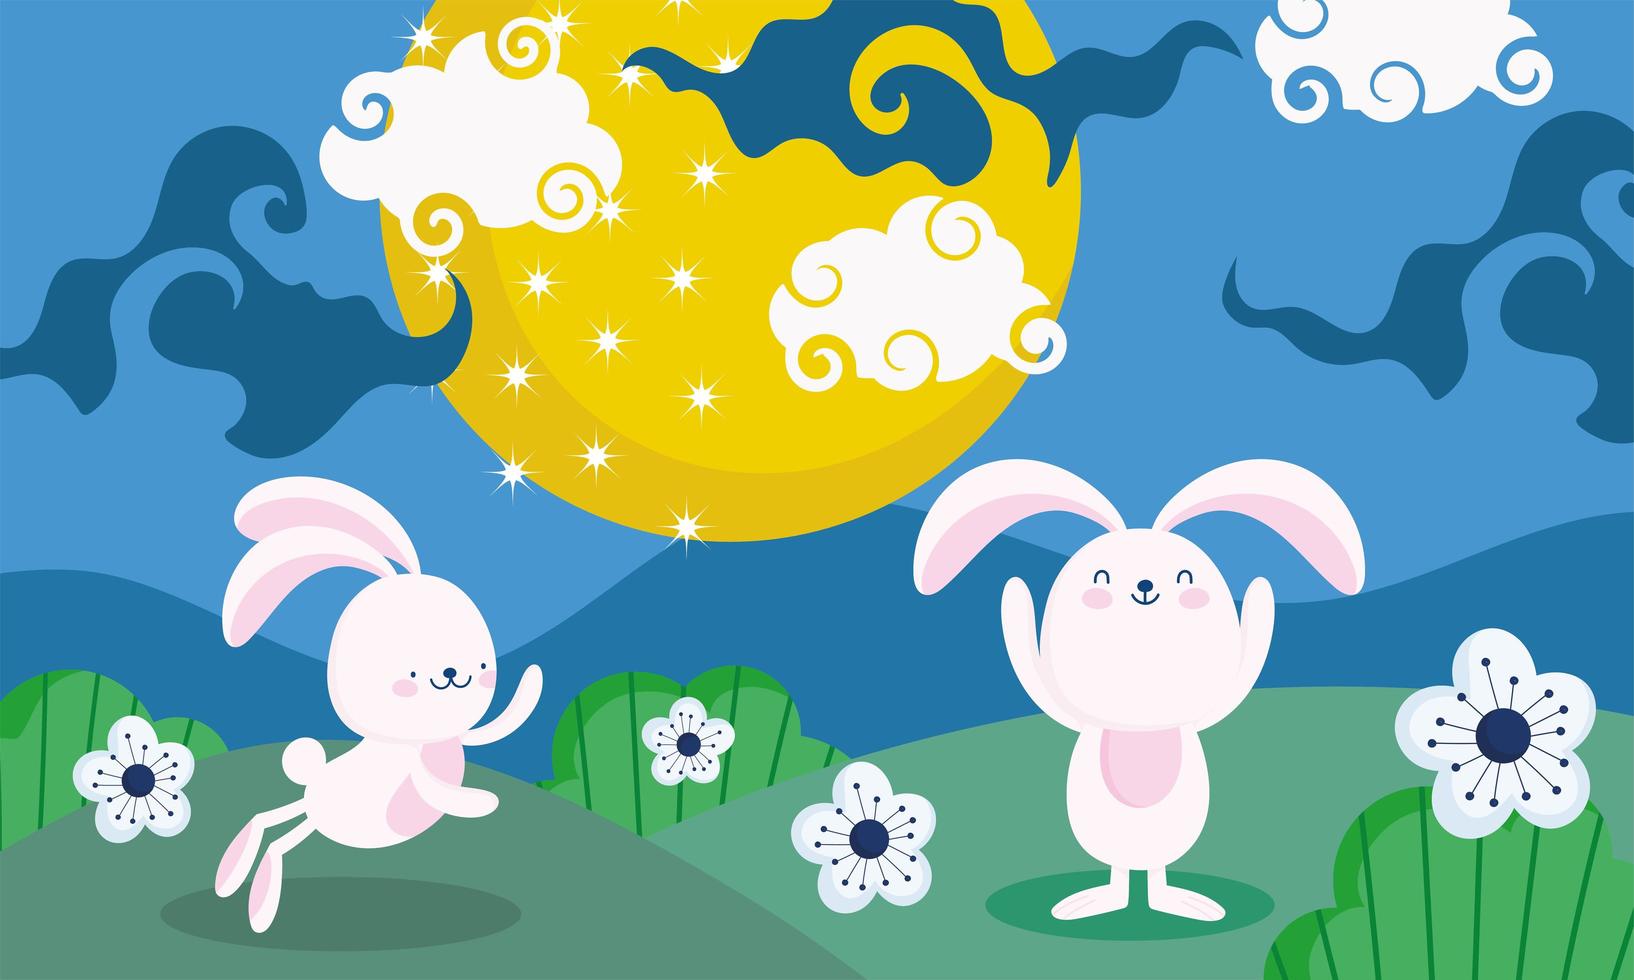 midherfstfestival met konijntjes, maan en bloemen vector